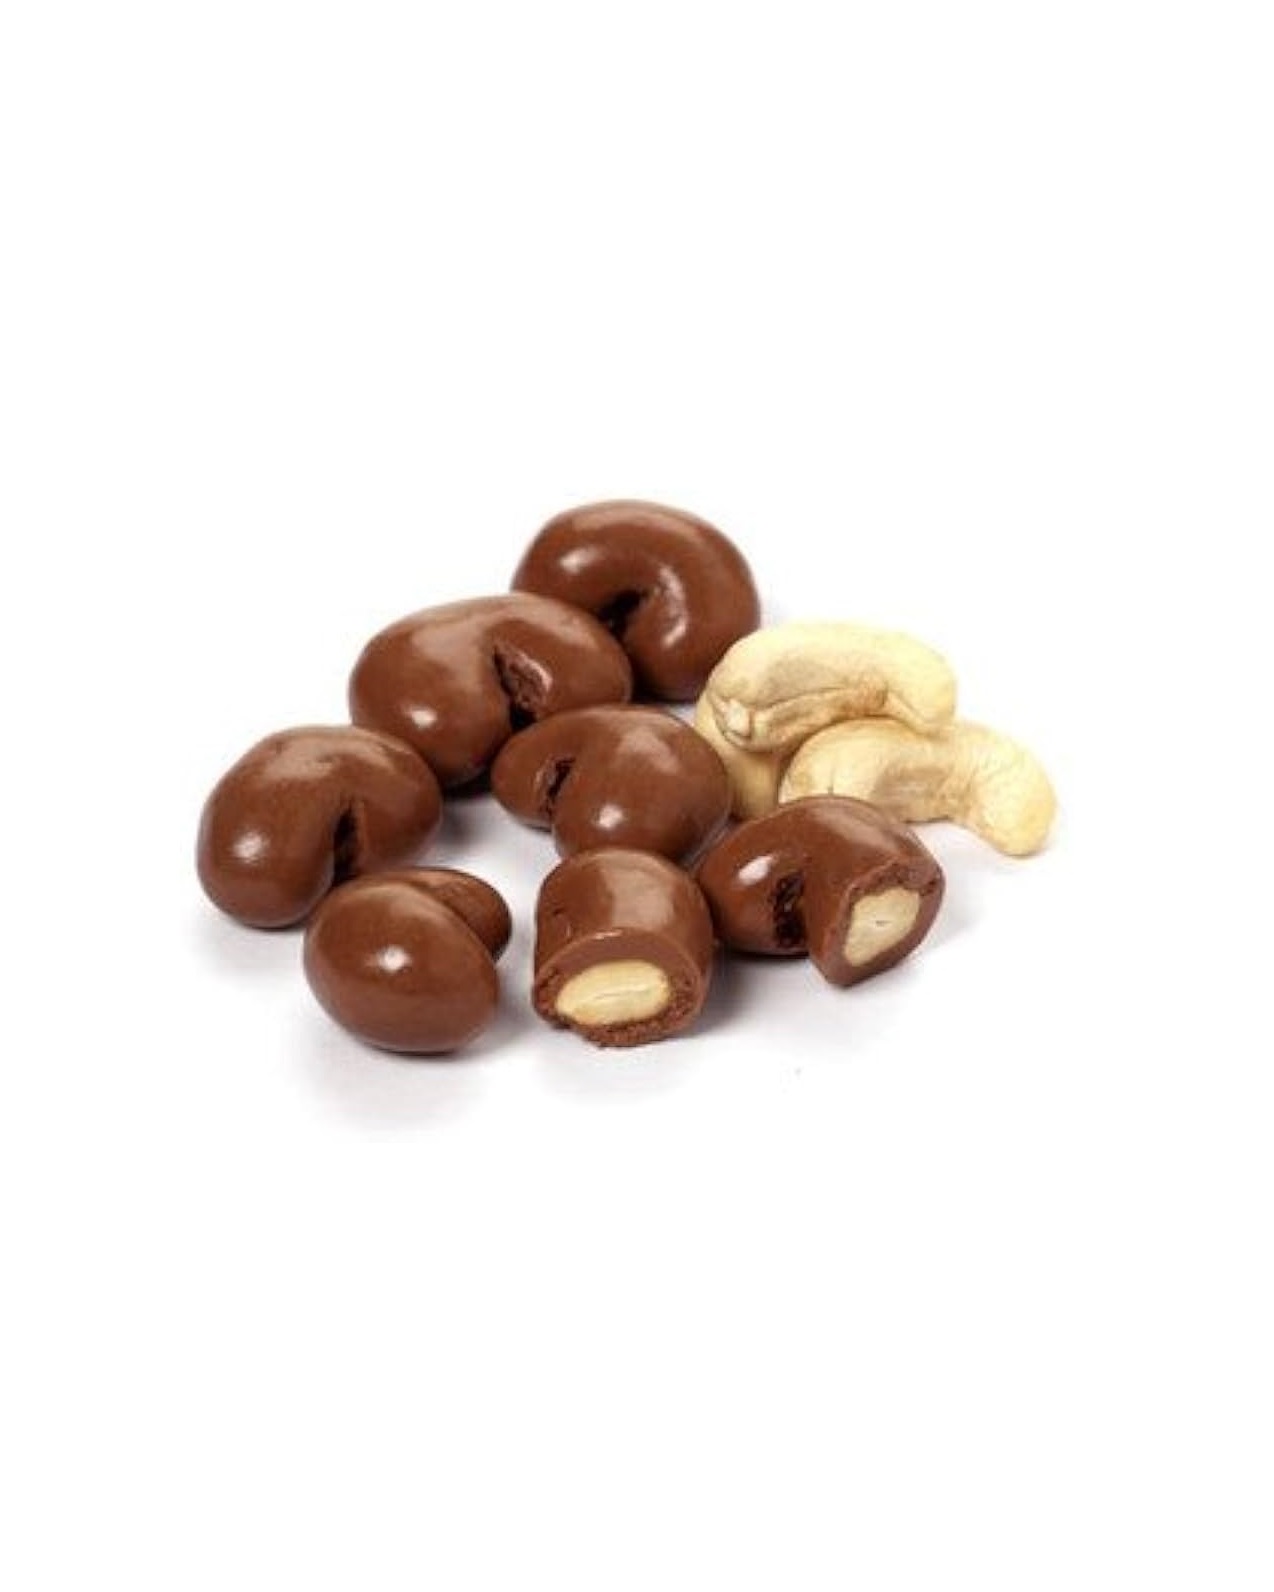 טבלה בטעם שוקולד אגוזי לוז(נוצ’לה) ללא גלוטן | כרמית